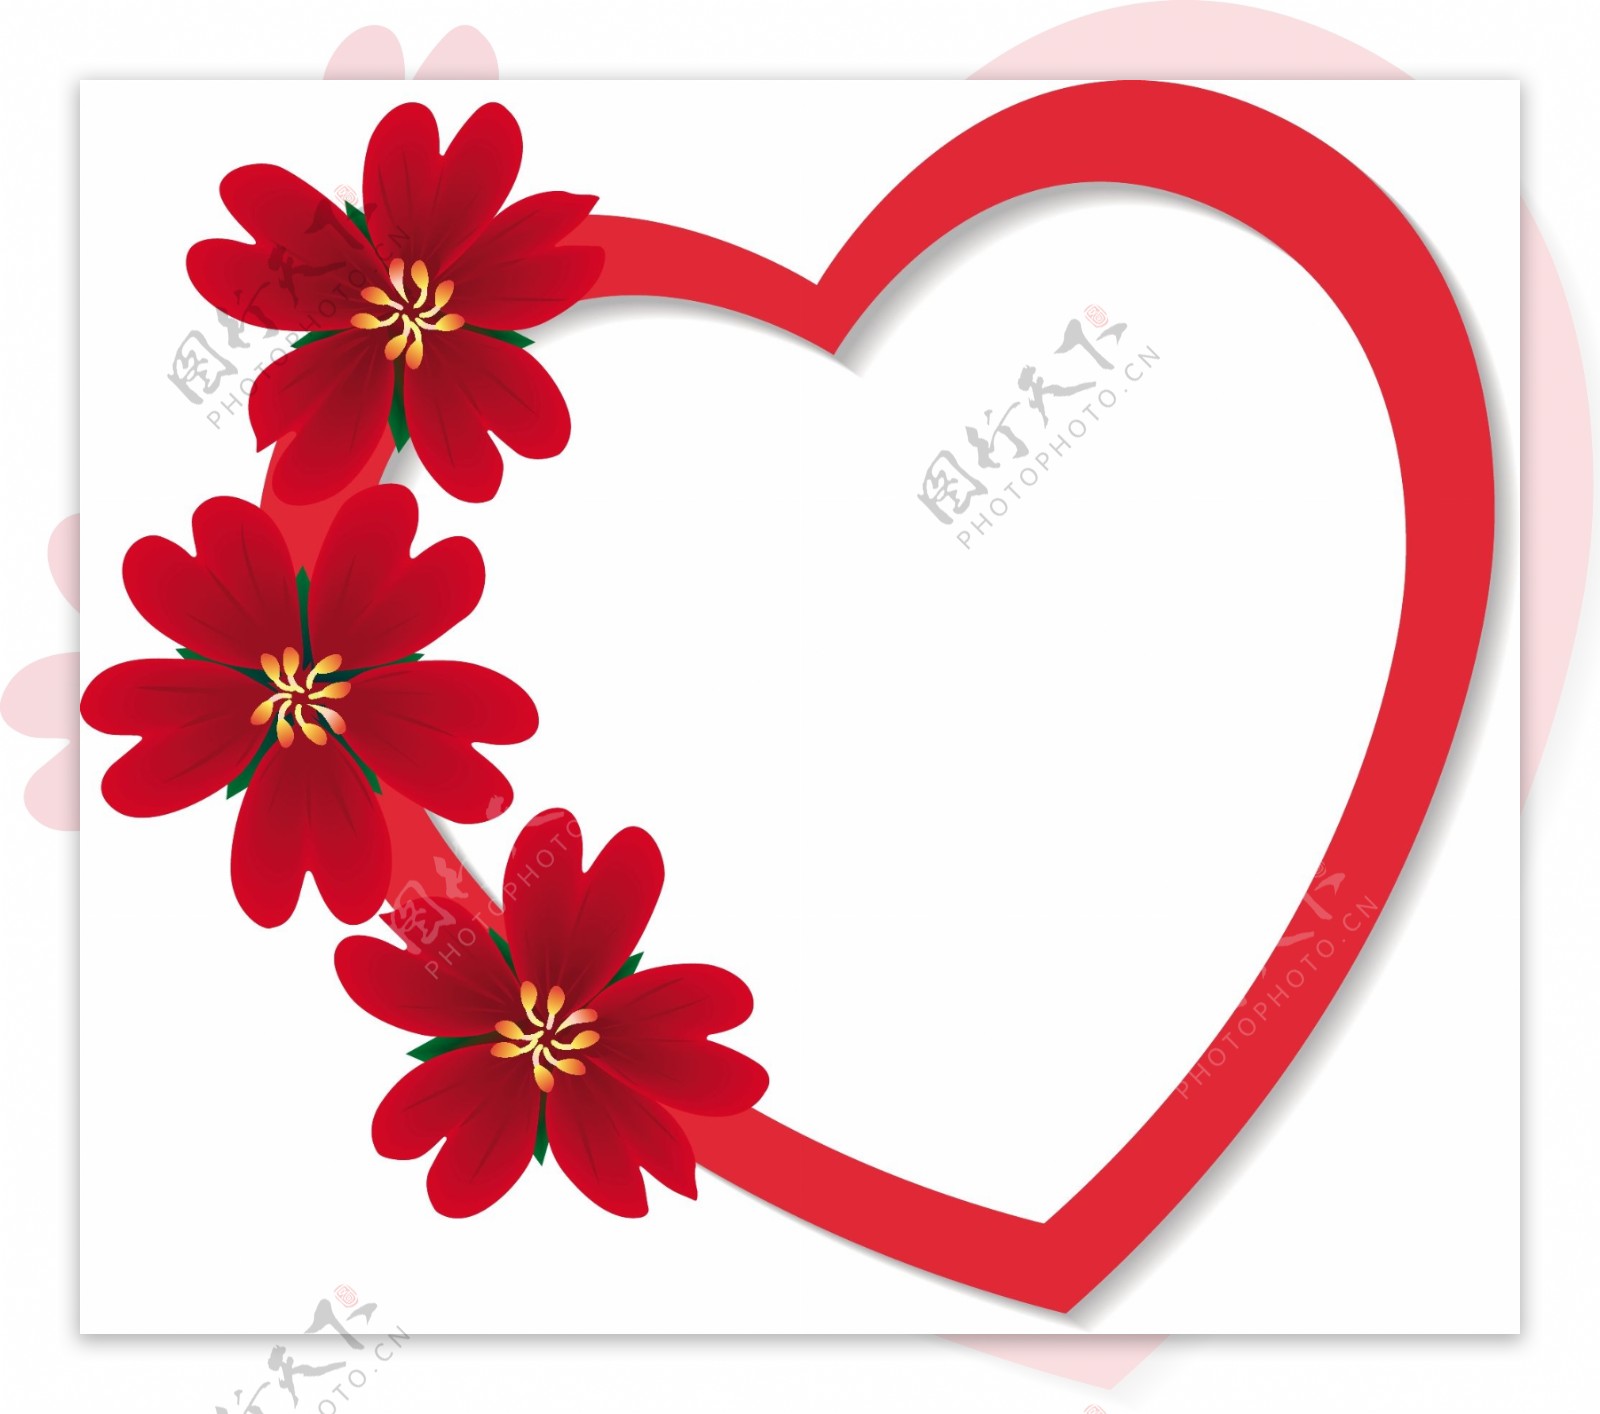 一款简单精美的红色花朵装饰心形矢量素材